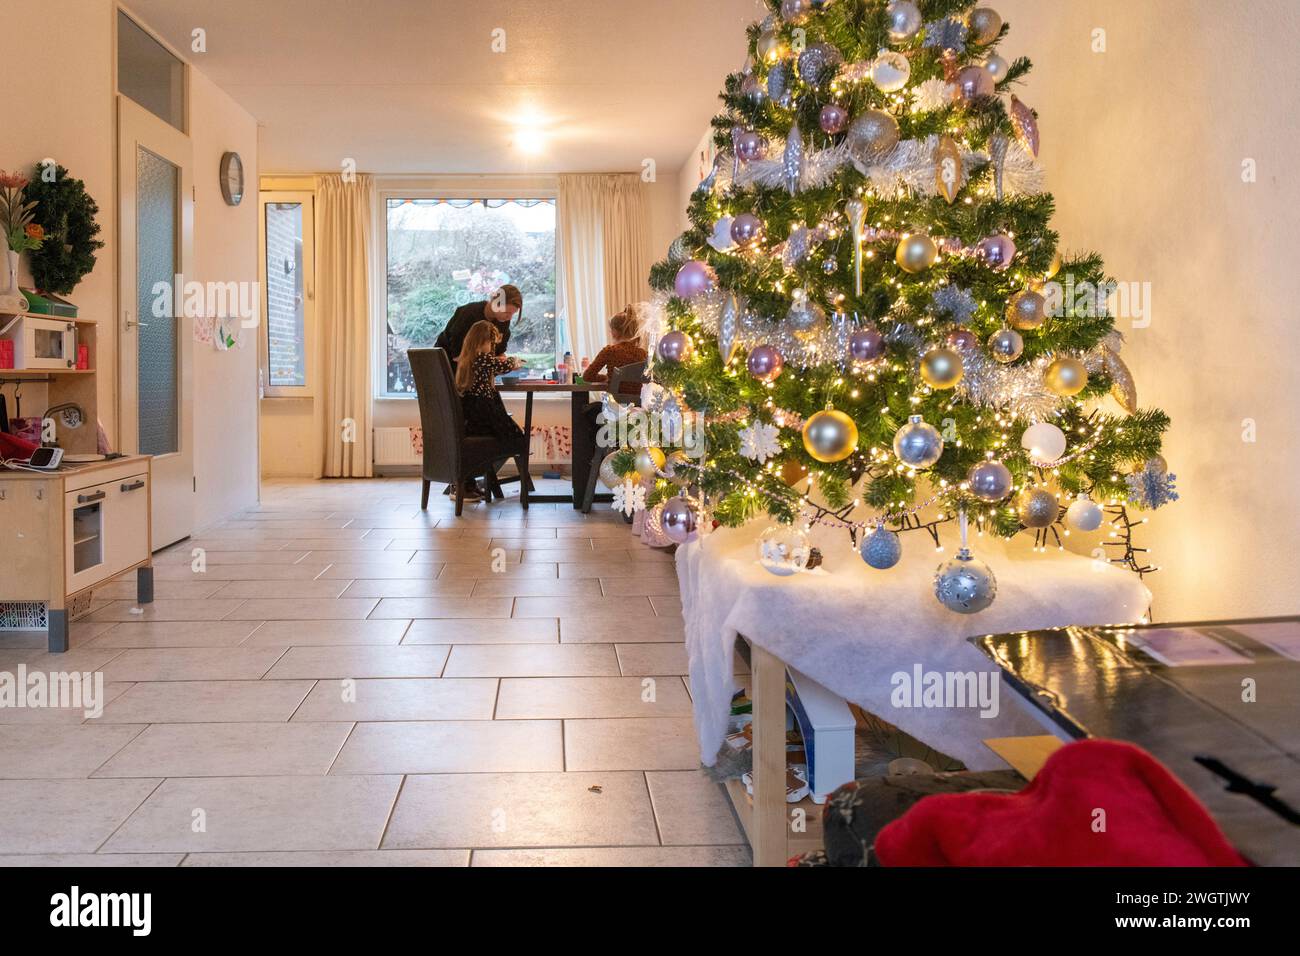 La famiglia sedeva al tavolo scrivendo auto con l'albero di Natale in primo piano. Luci e baule Foto Stock